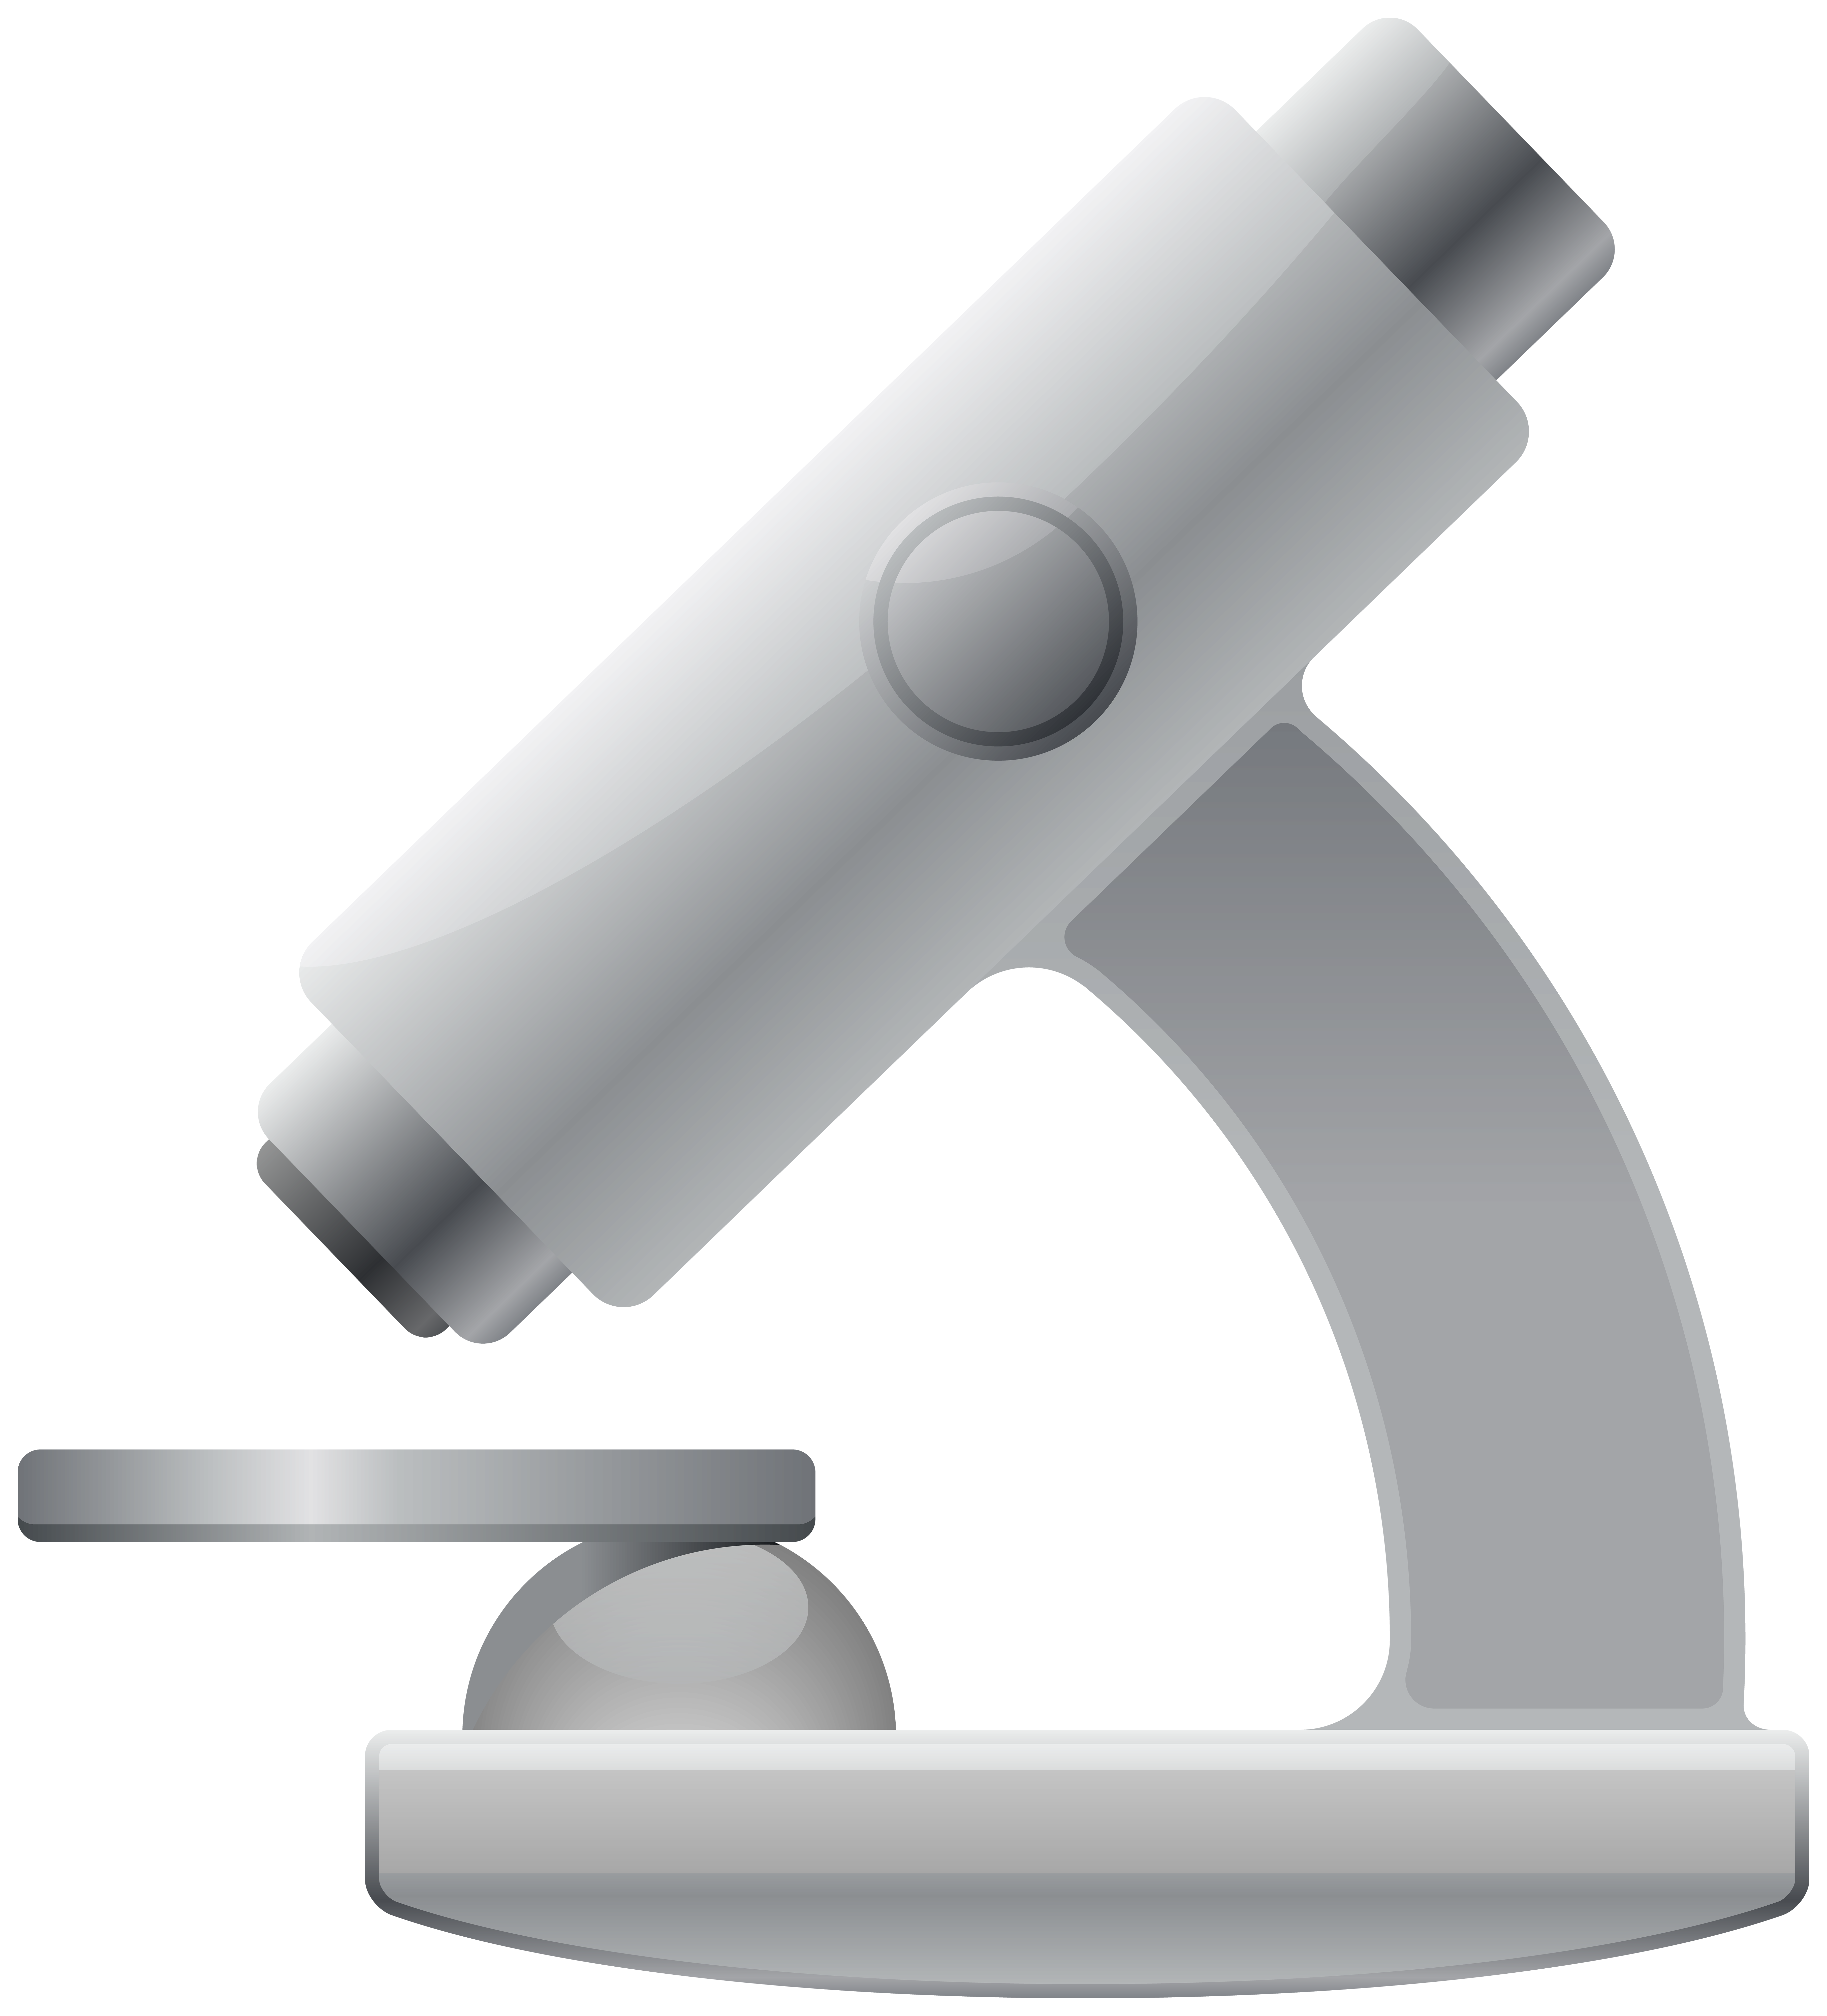 microscope clipart micro scope